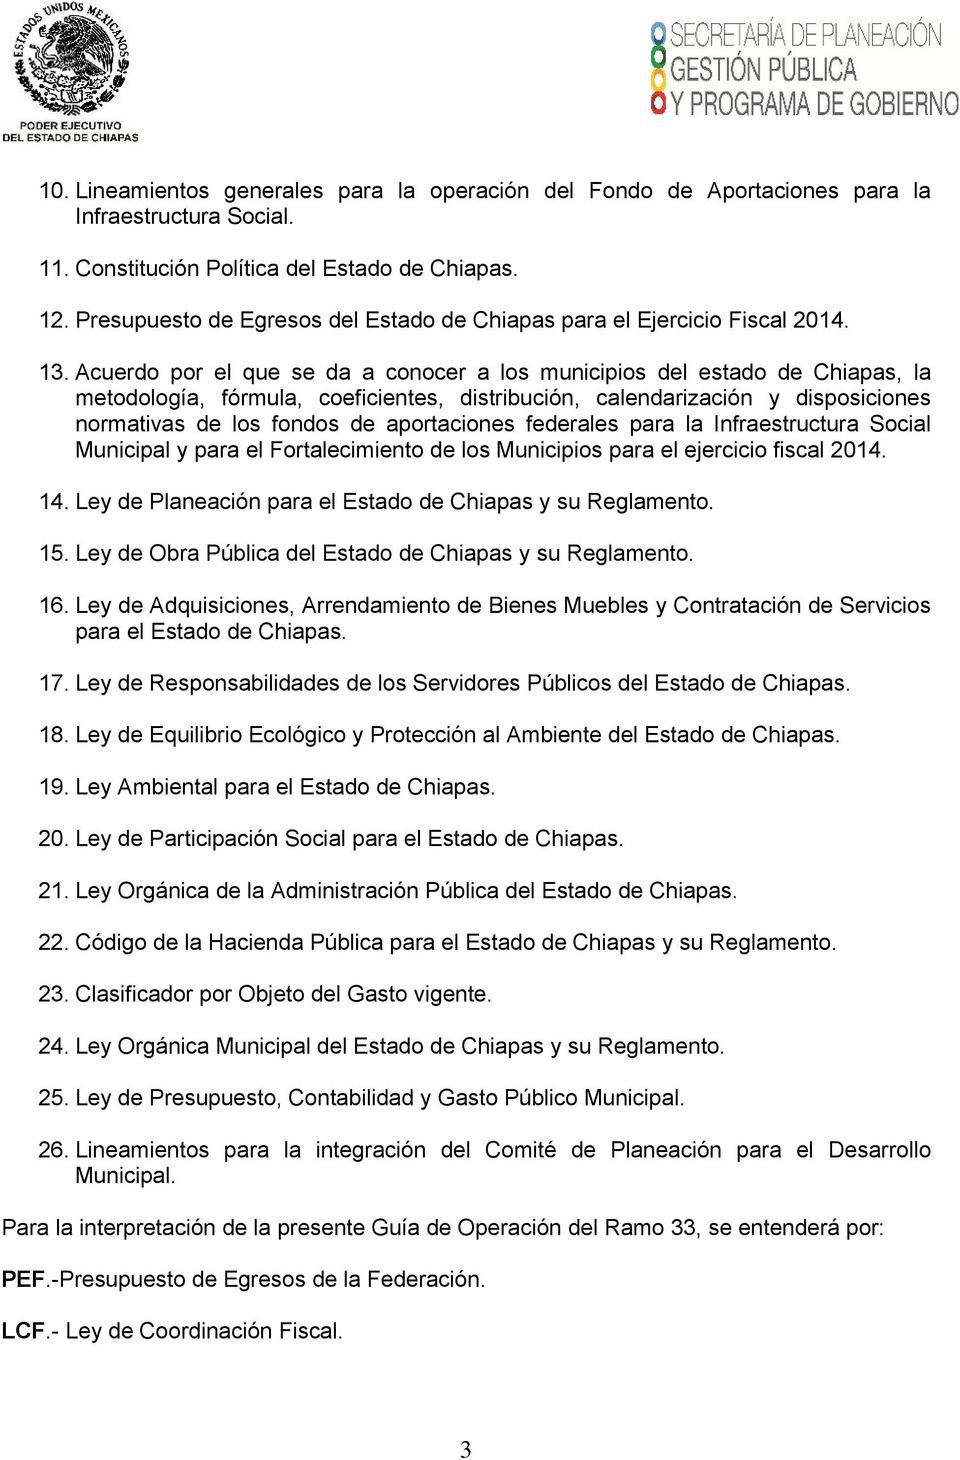 Acuerdo por el que se da a conocer a los municipios del estado de Chiapas, la metodología, fórmula, coeficientes, distribución, calendarización y disposiciones normativas de los fondos de